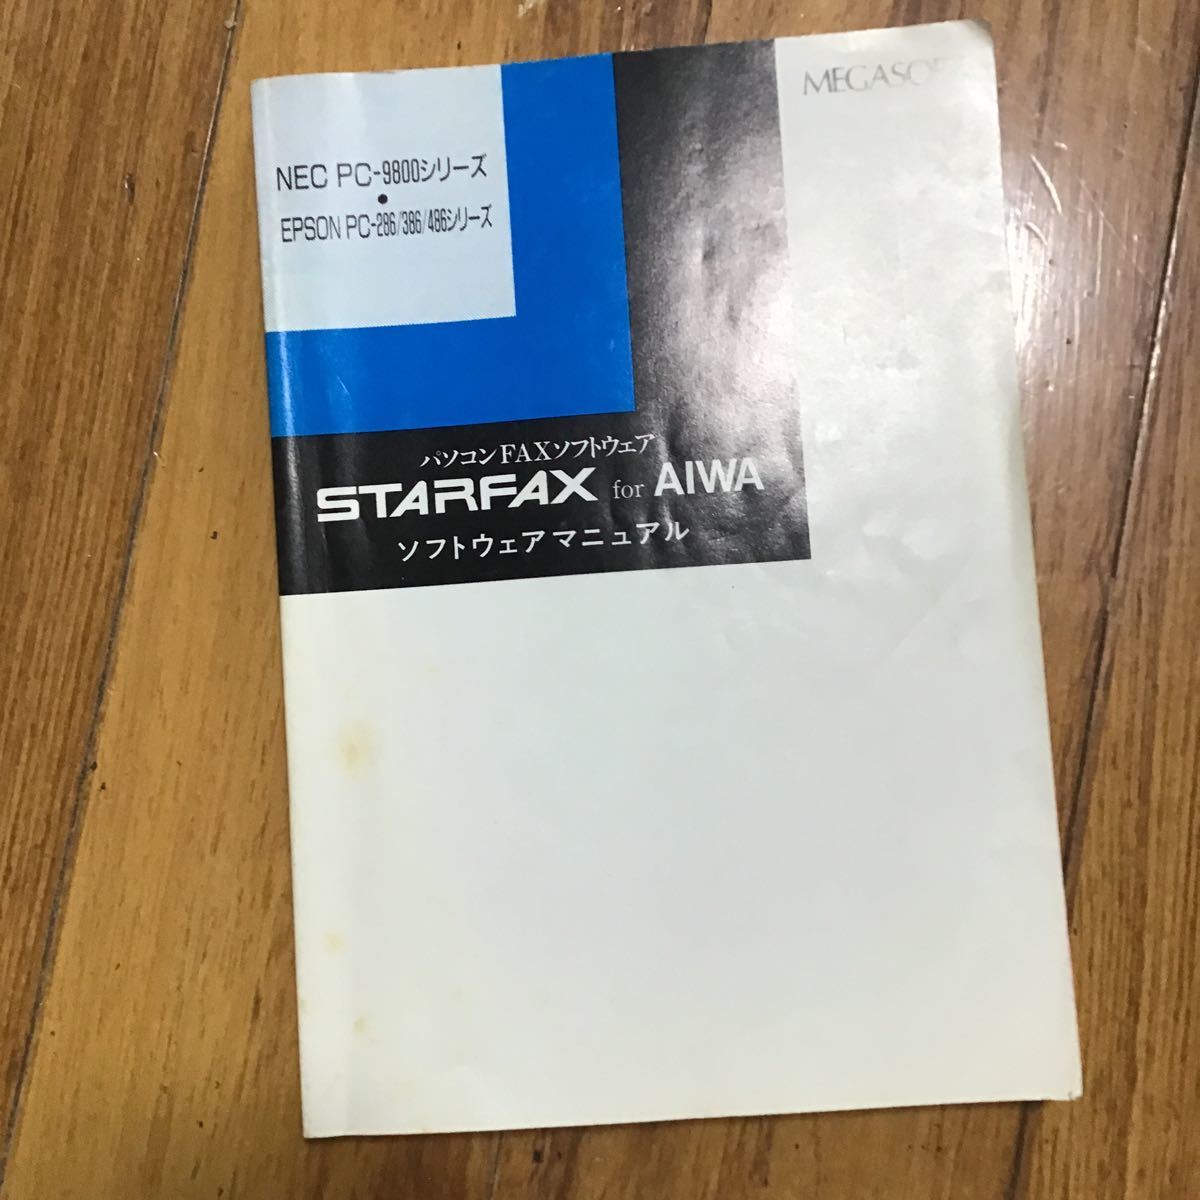 パソコン fax 【新作入荷!!】 ソフトウエア starfax 再入荷 予約販売 本 aiwa ソフトウェアマニュアル for